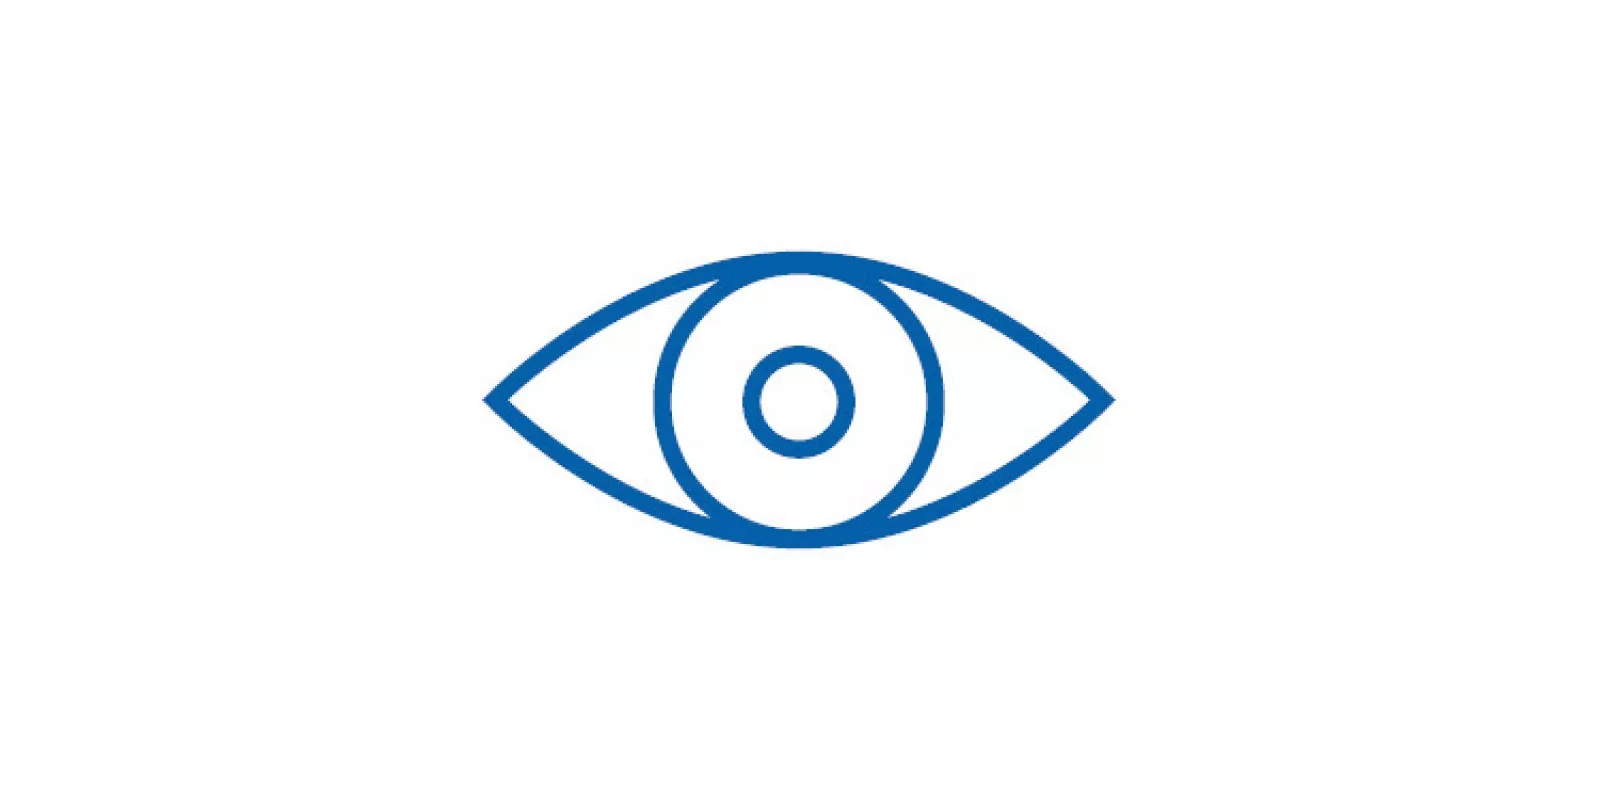 Icon of eye